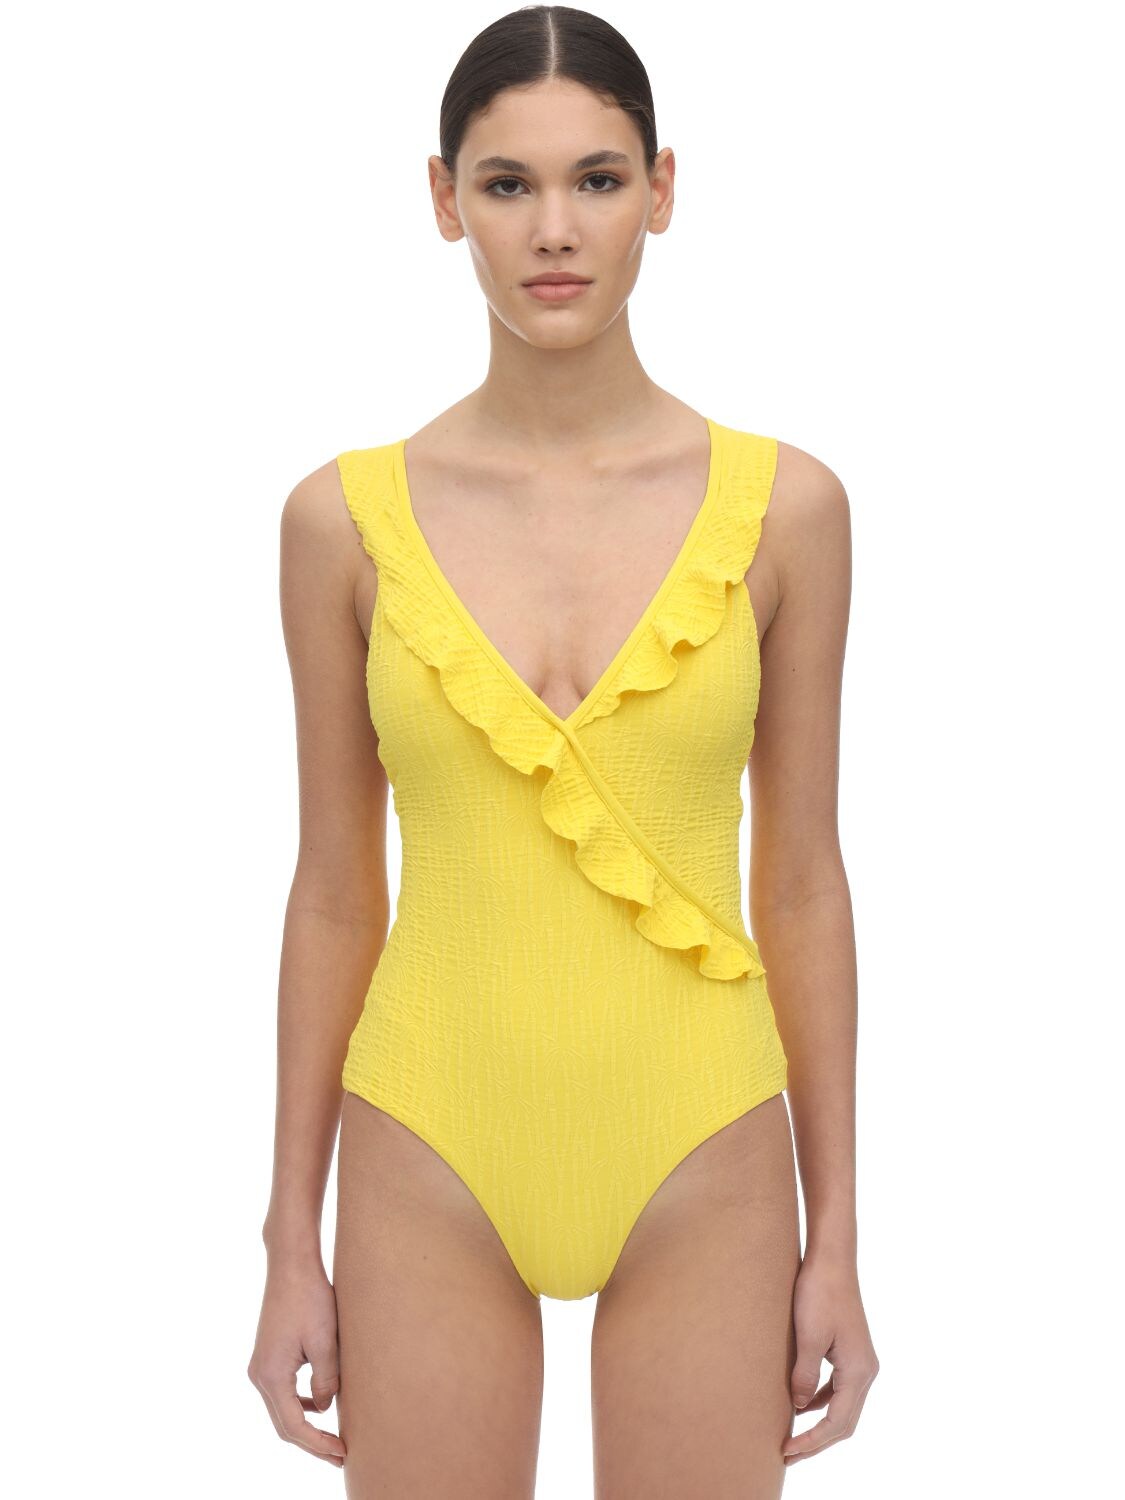 Albertine Pina Ruffled Textured One Piece Swimsuit In Yellow